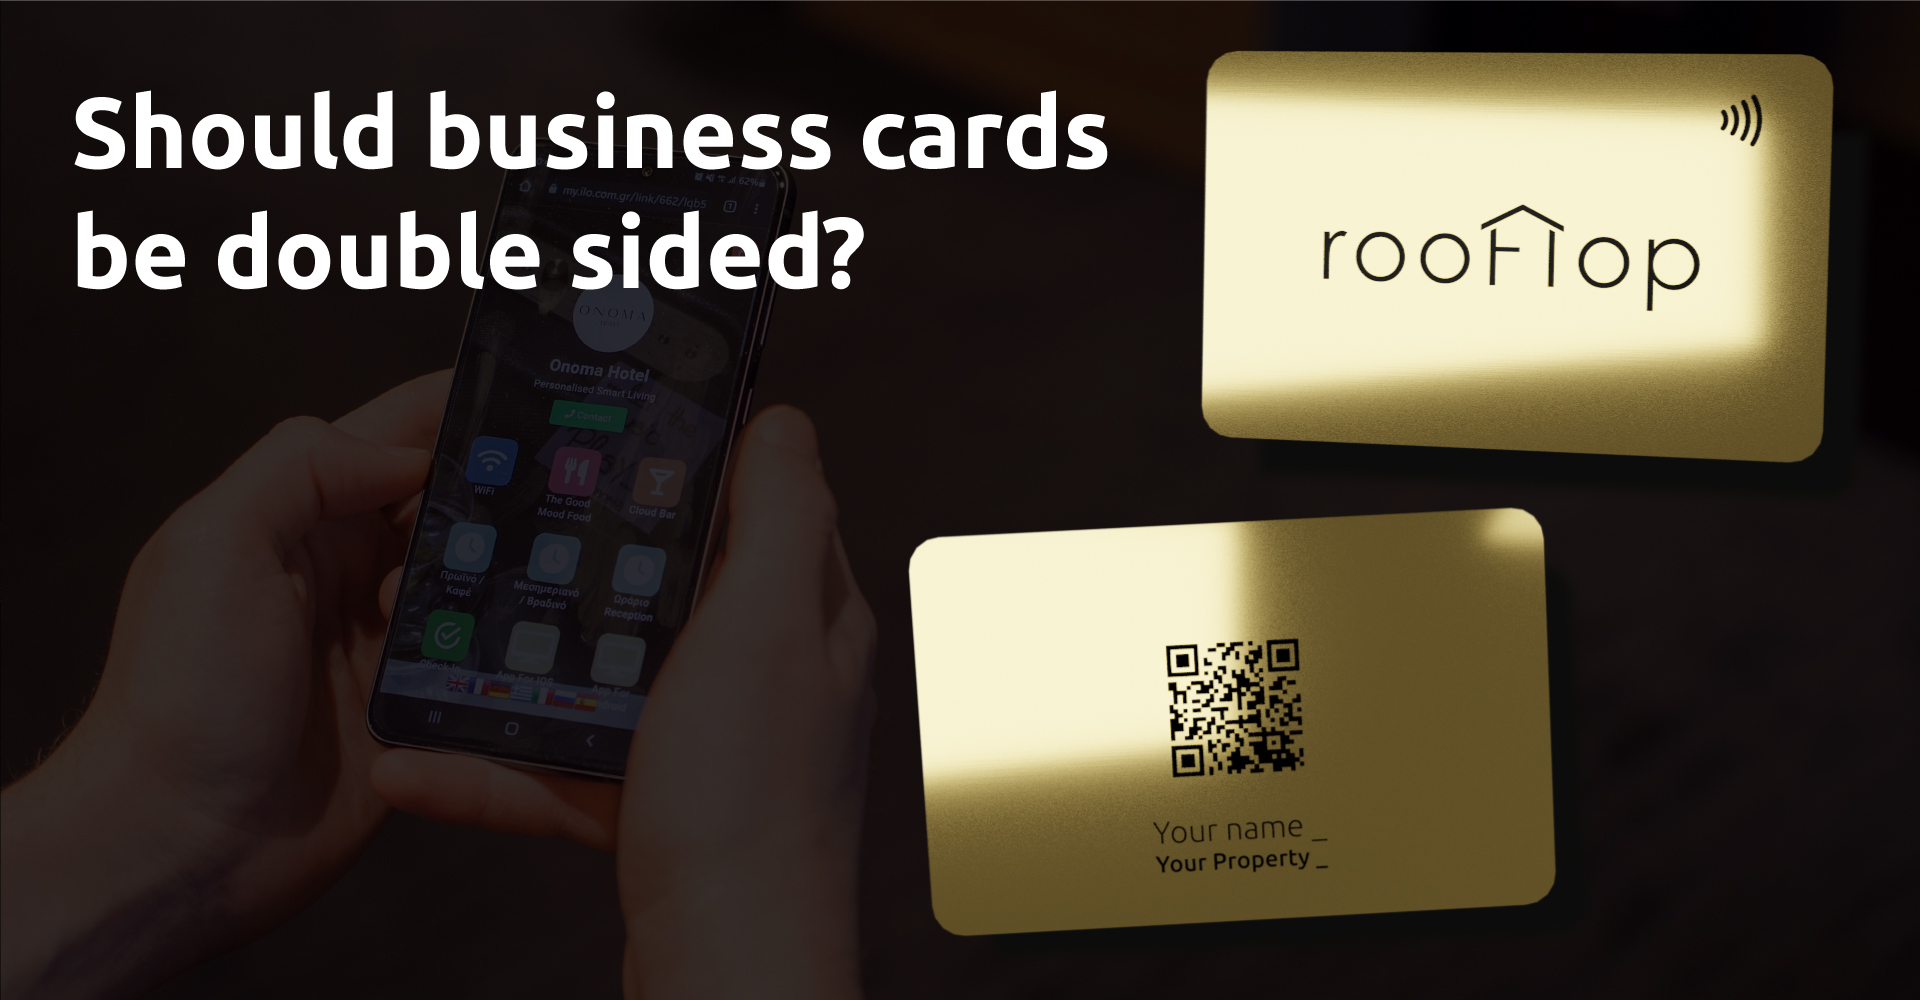 Επαγγελματικές κάρτες διπλής όψης. Γιατί να τις επιλέξετε;/Should business cards be double sided?